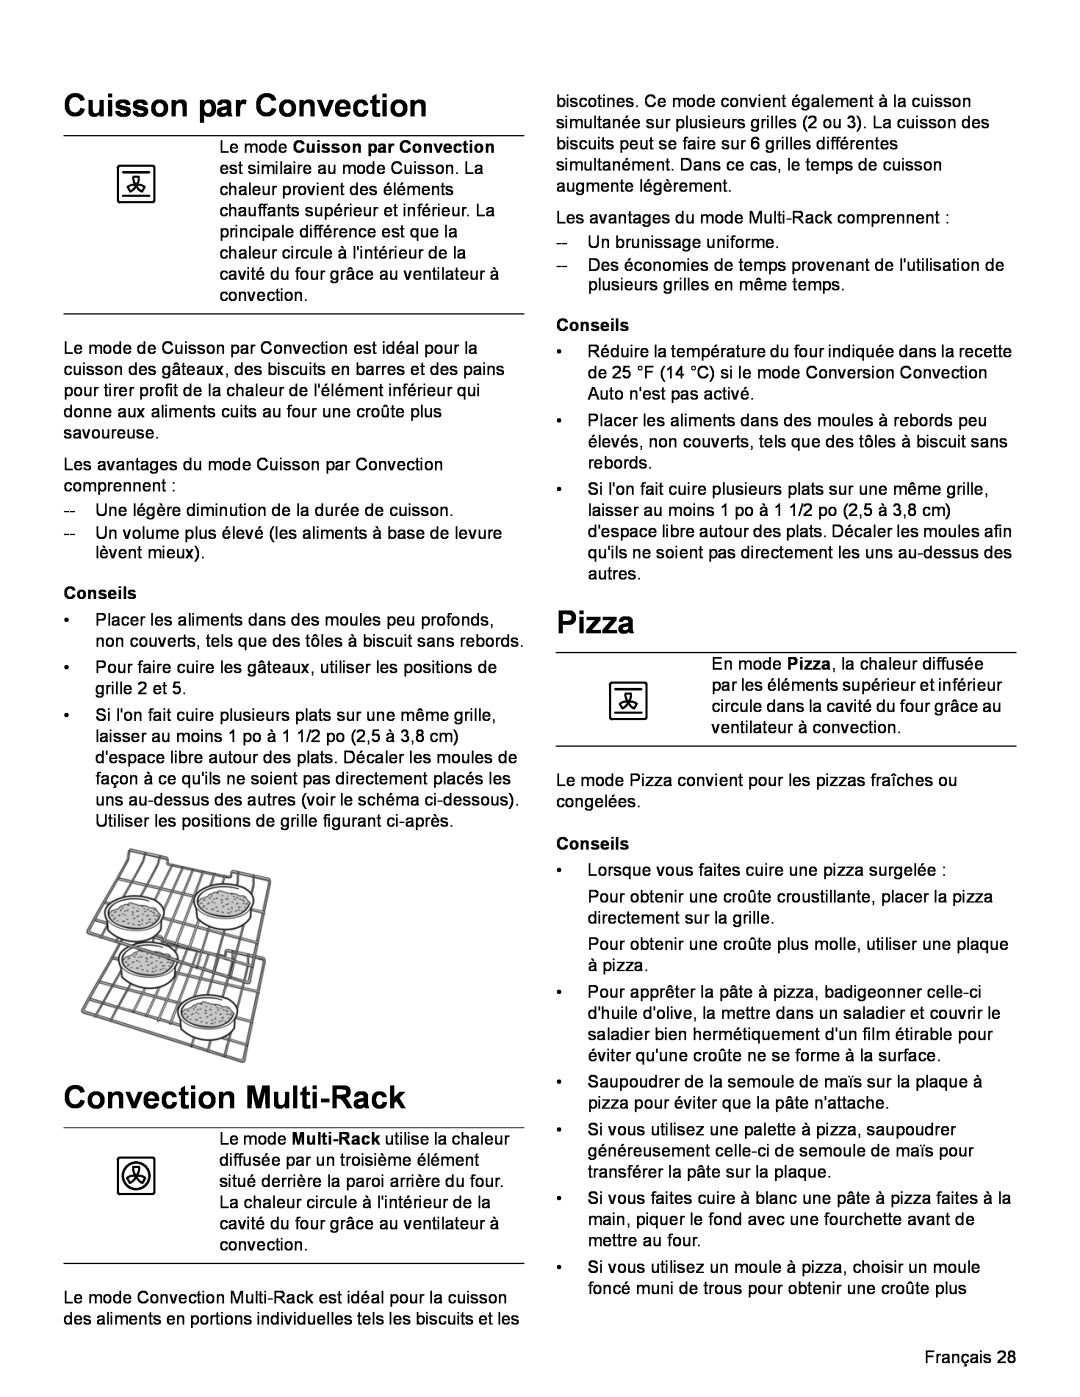 Bosch Appliances HDI8054U manual Le mode Cuisson par Convection, Convection Multi-Rack, Pizza, Conseils 